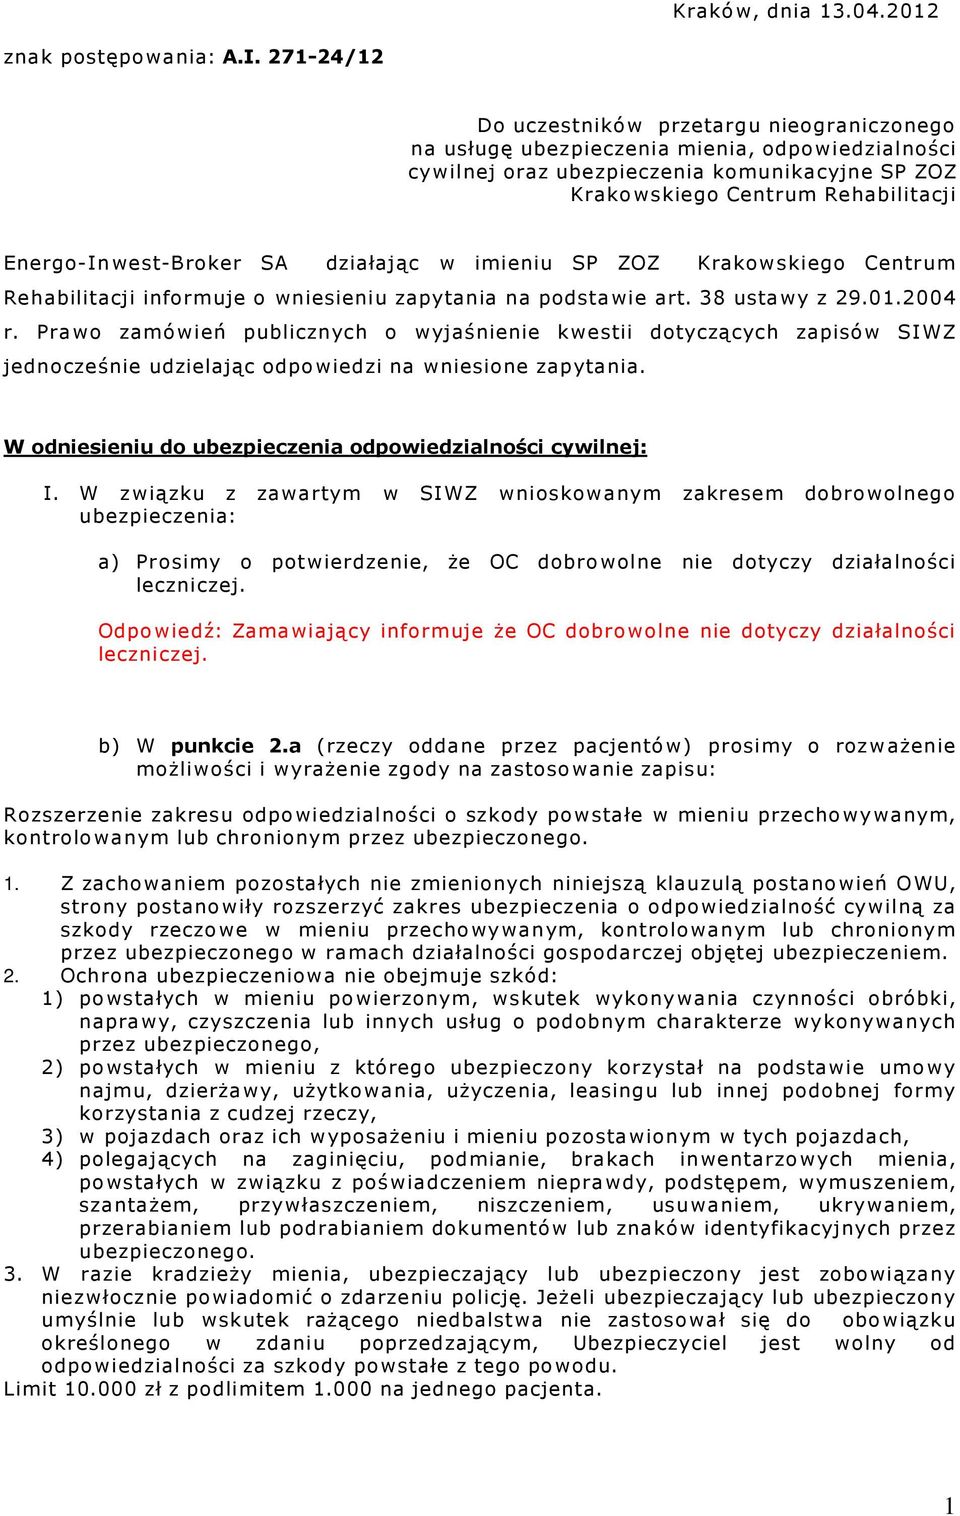 Energo-Inwest-Broker SA działając w imieniu SP ZOZ Krakowskiego Centrum Rehabilitacji informuje o wniesieniu zapytania na podstawie art. 38 ustawy z 29.01.2004 r.